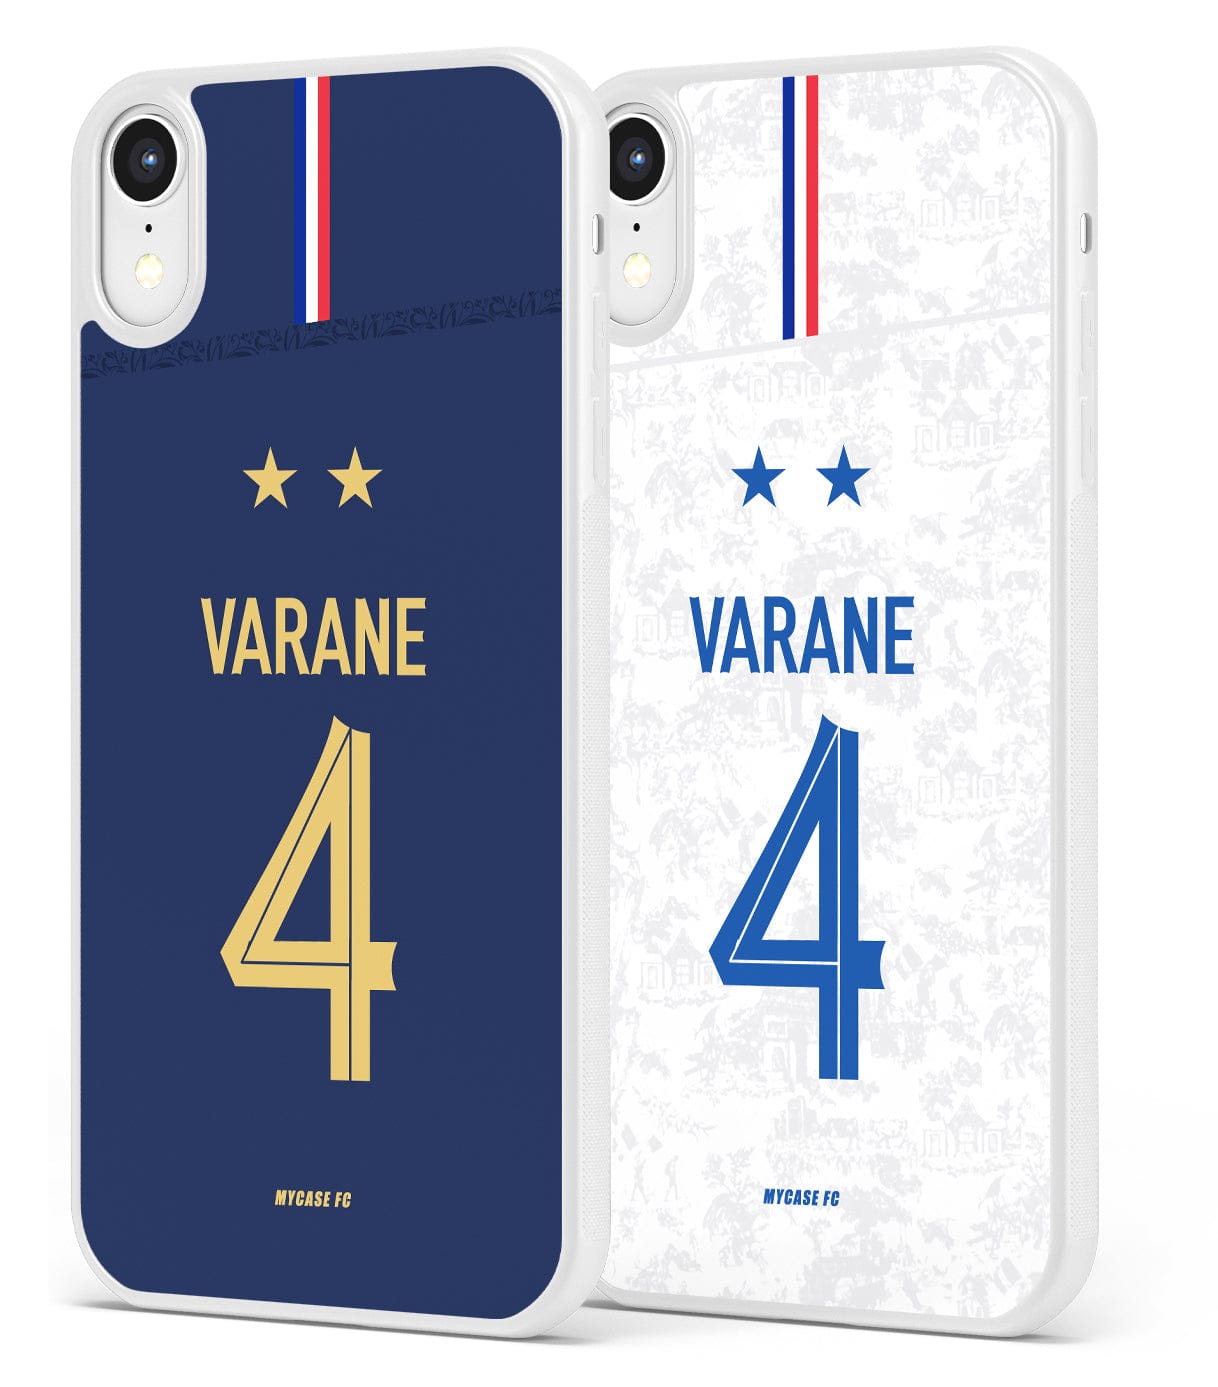 FRANCE - VARANE - MYCASE FC